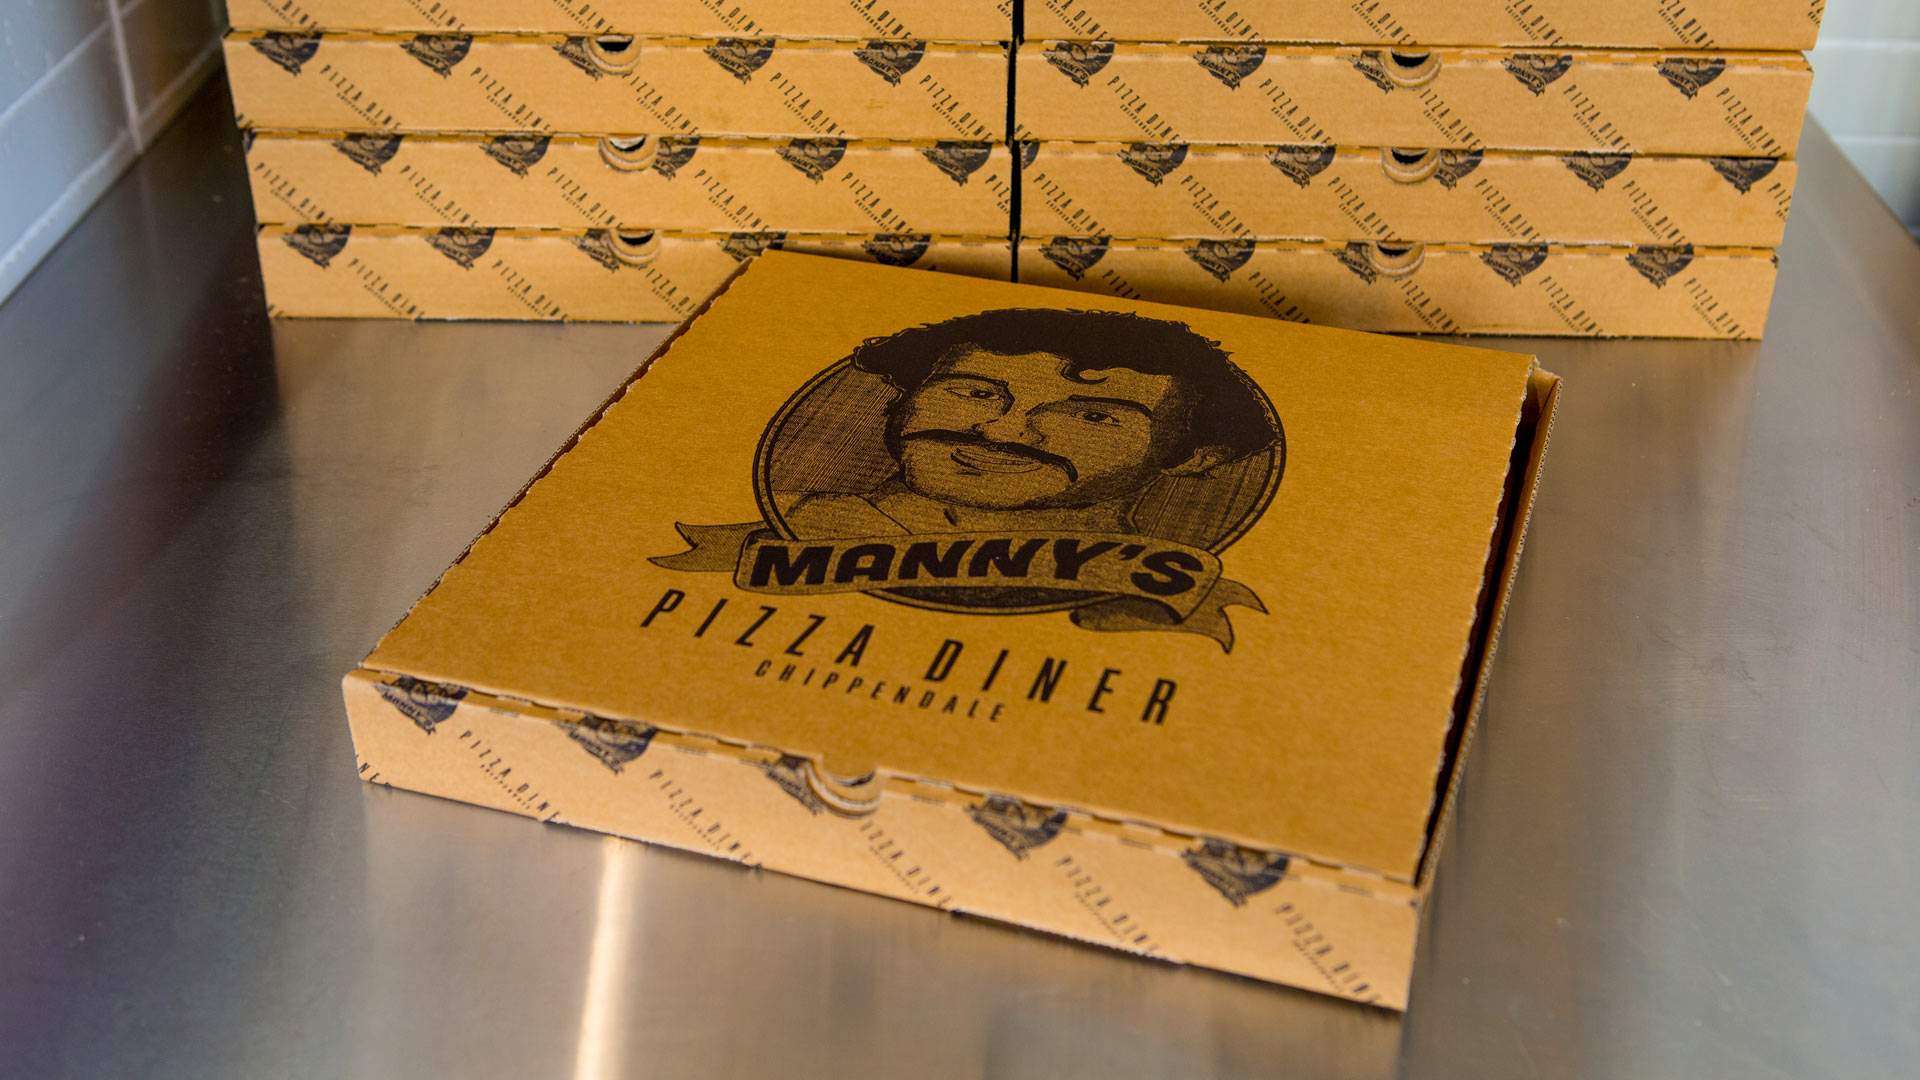 Manny's Pizza Diner